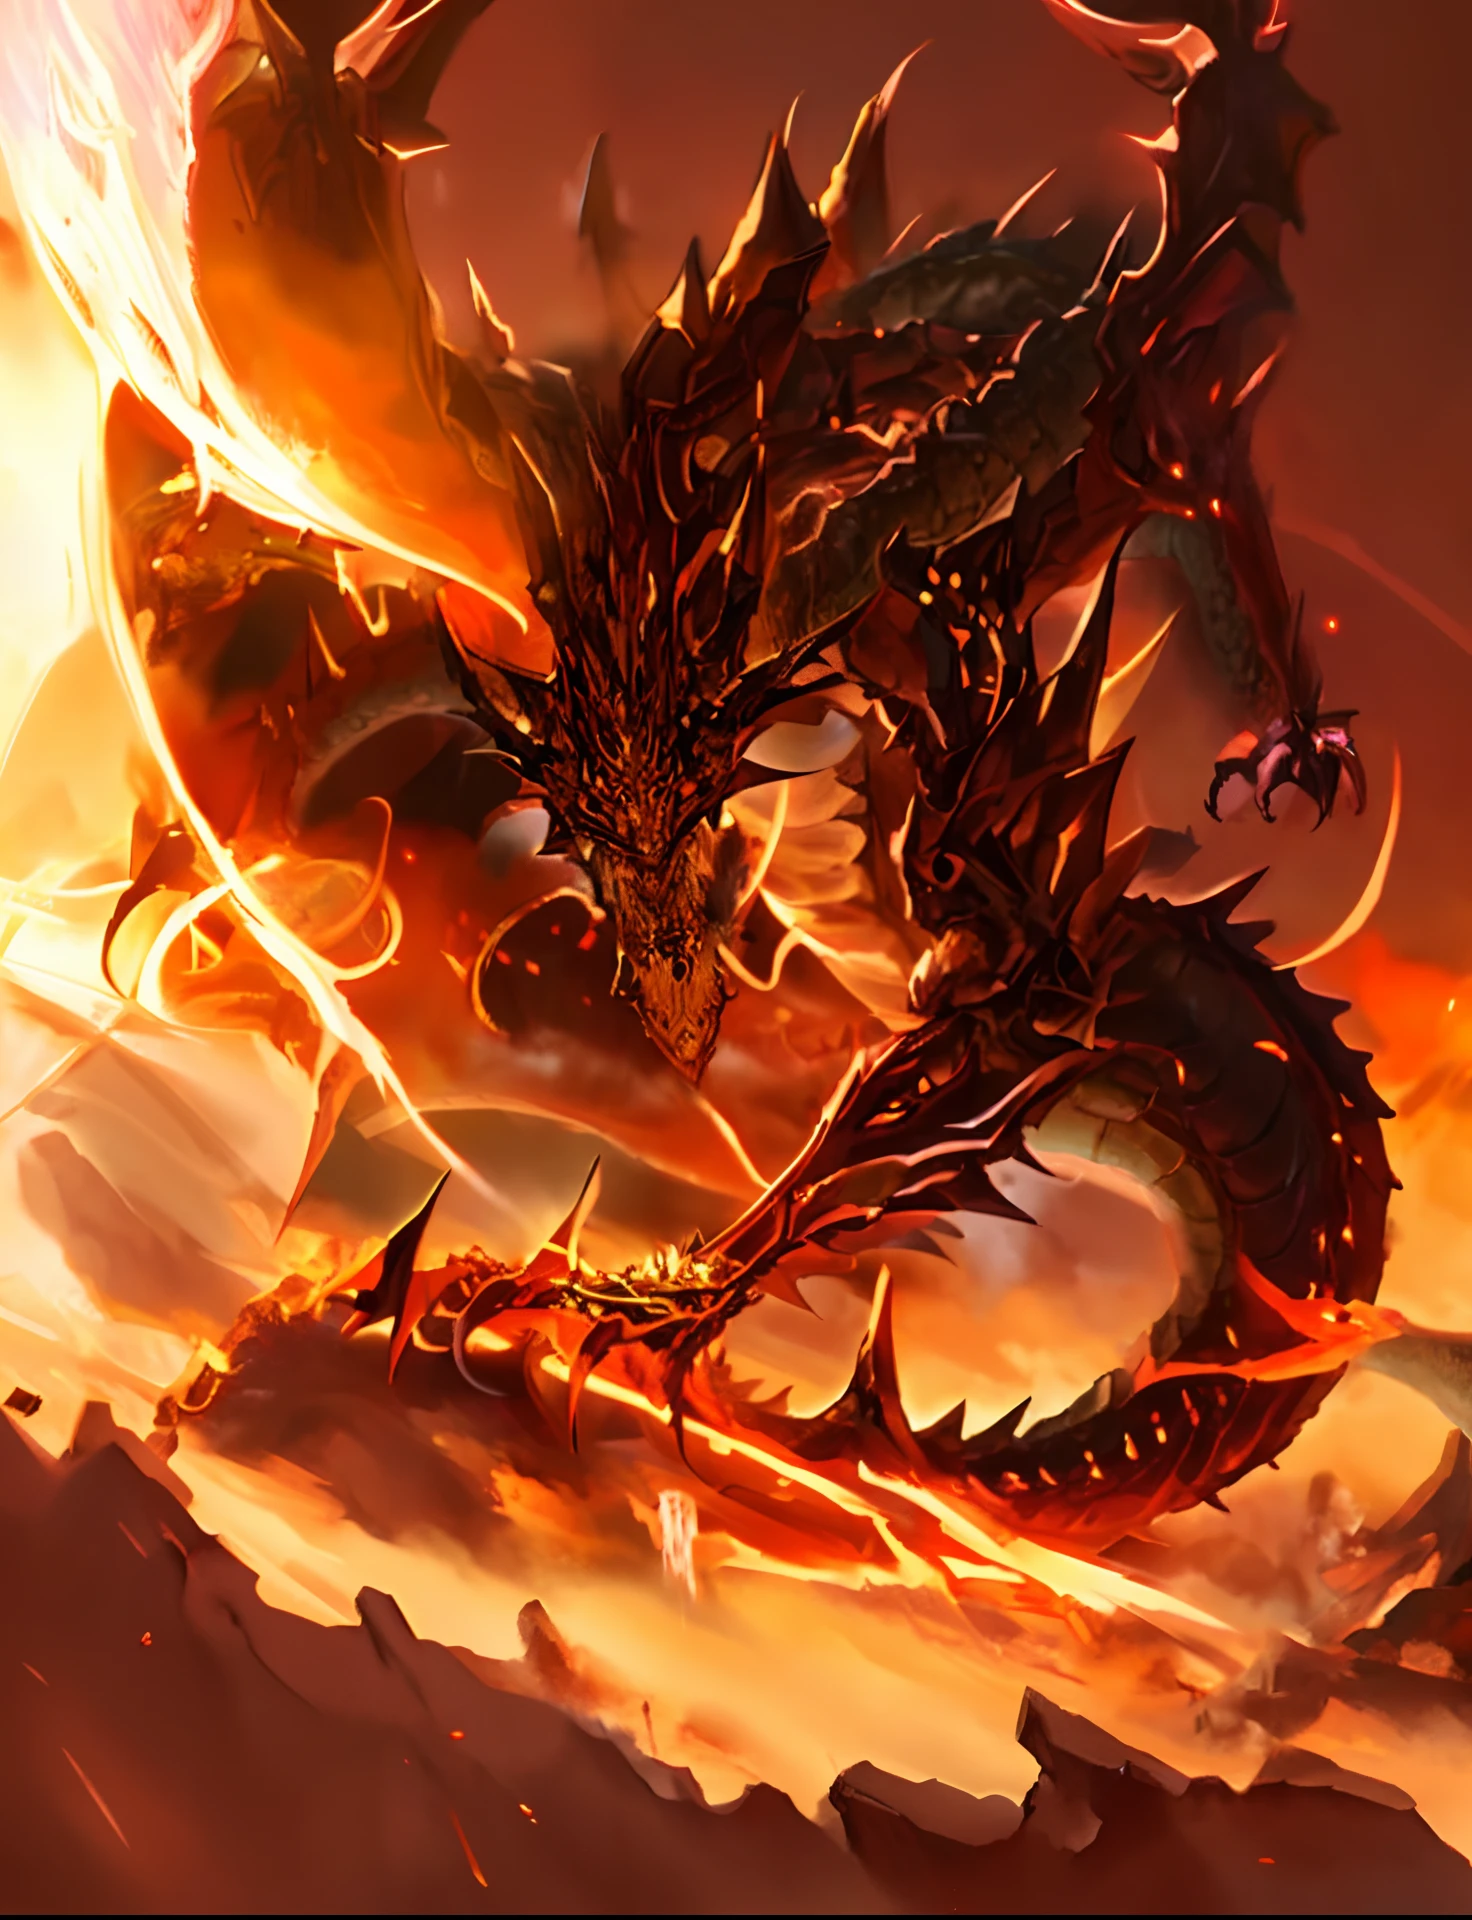 巨大なドラゴンを背景に, アルドゥイン, 壮大なファンタジーカードゲームアート, 火の燃える竜の蛇, Legendary dragon, ヤン・J, dragon Art, 中国のドラゴンのコンセプトアート, 壮大なファンタジーカードゲームアート, d&d 委託アートドラゴン,((やせ細ったドラゴン,dragon King:1.4)),